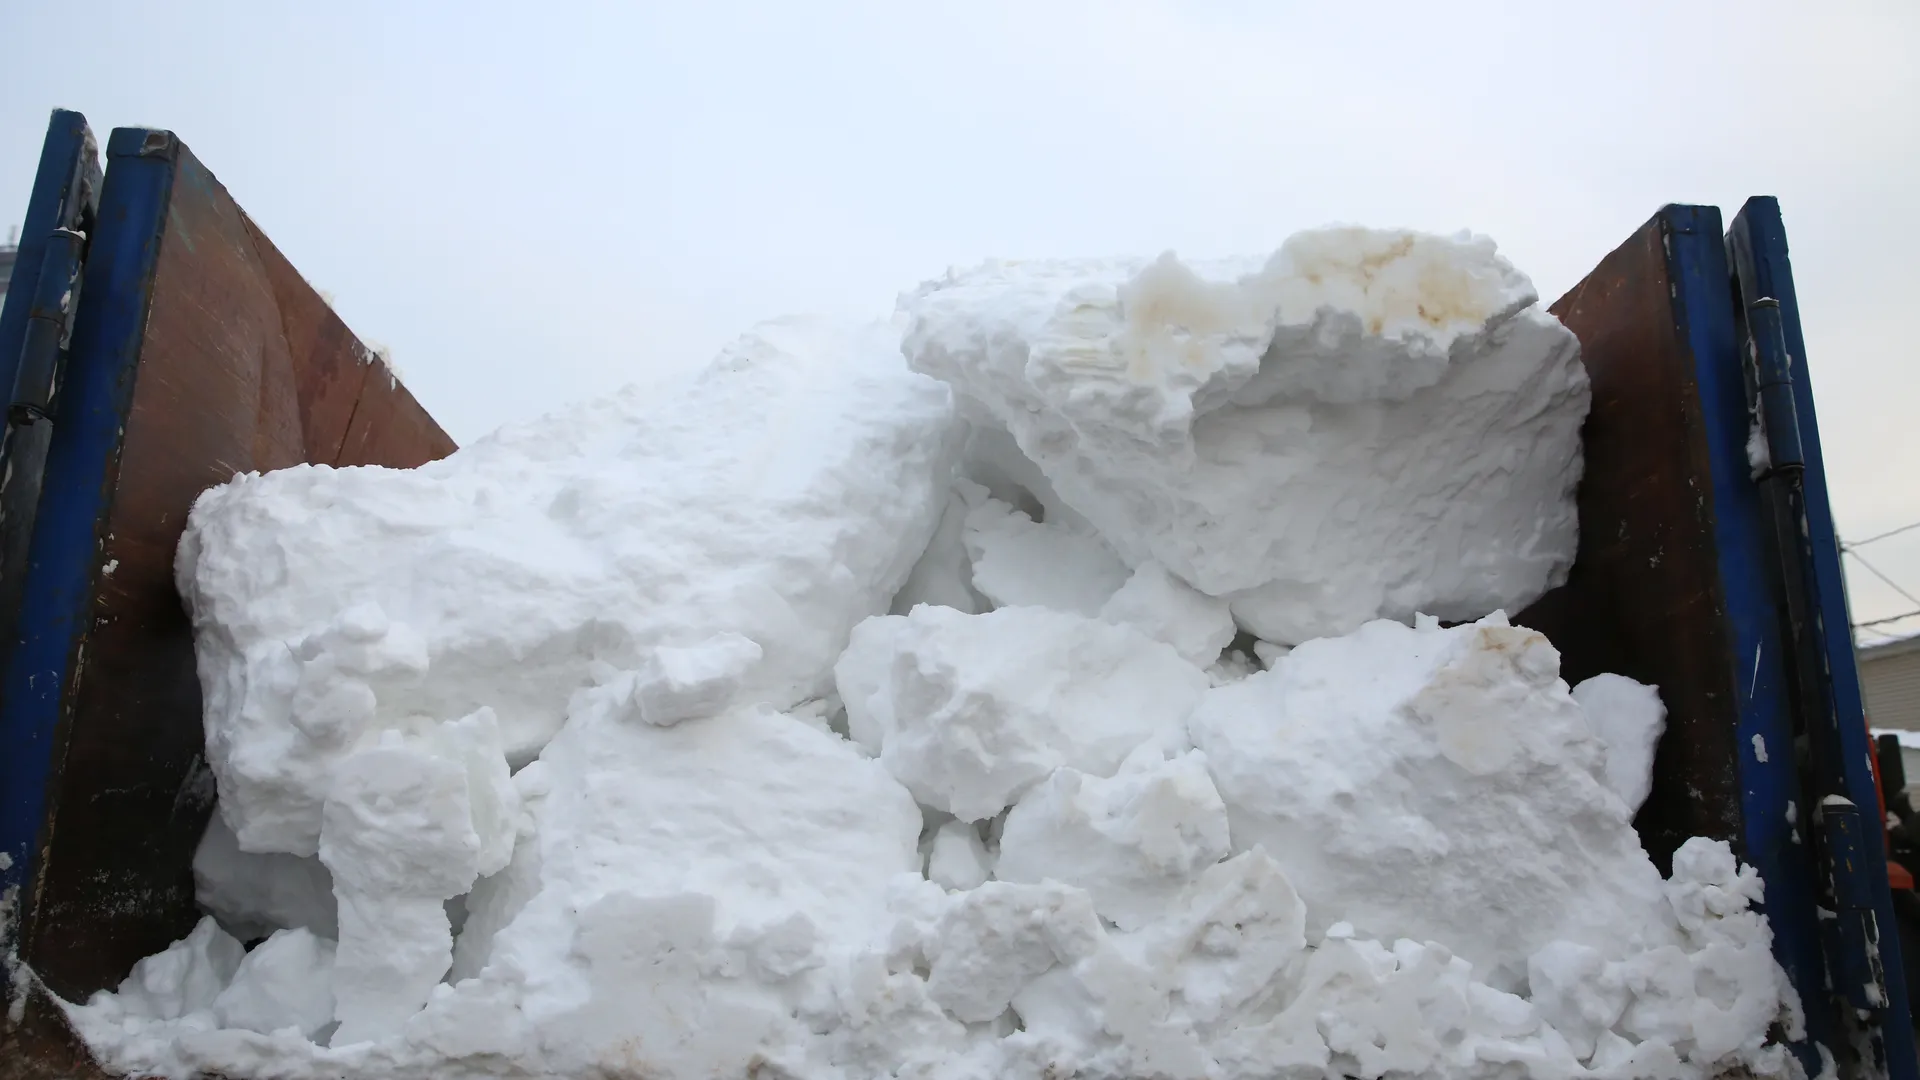 Загрутдинов: на Березовой аллее построят снегосплавный пункт